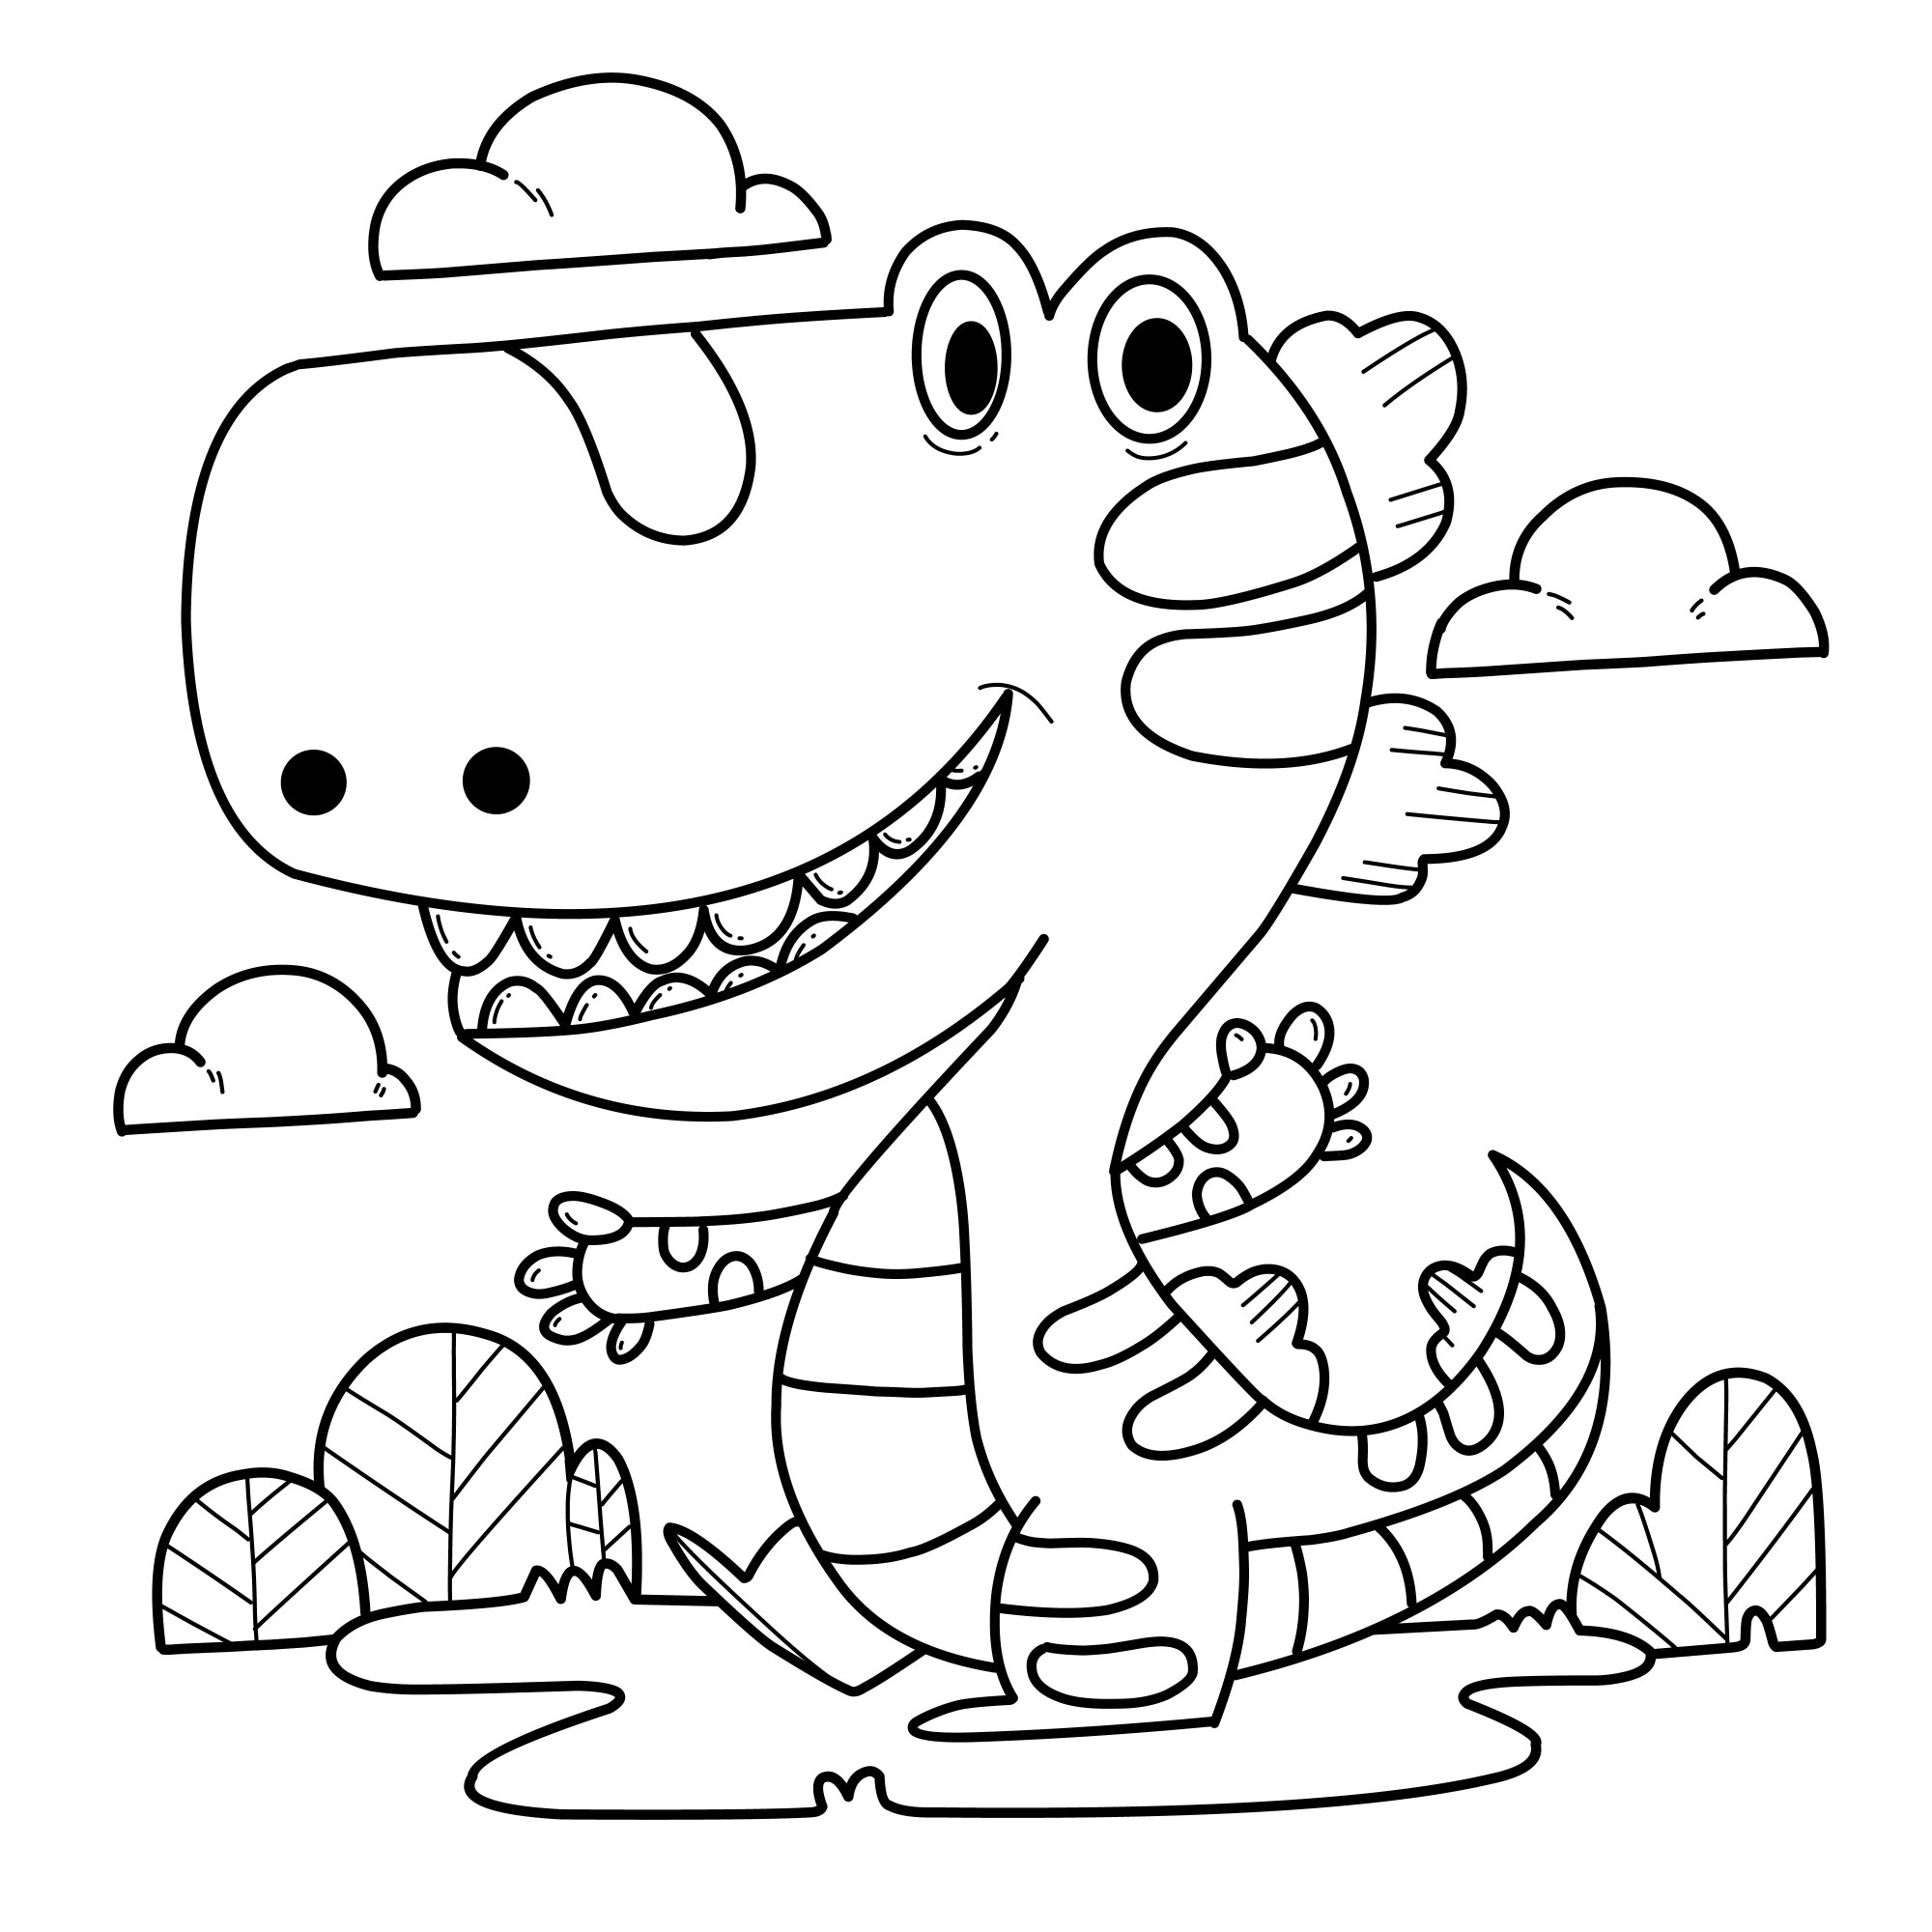 Раскраска для детей: динозаврик на поляне